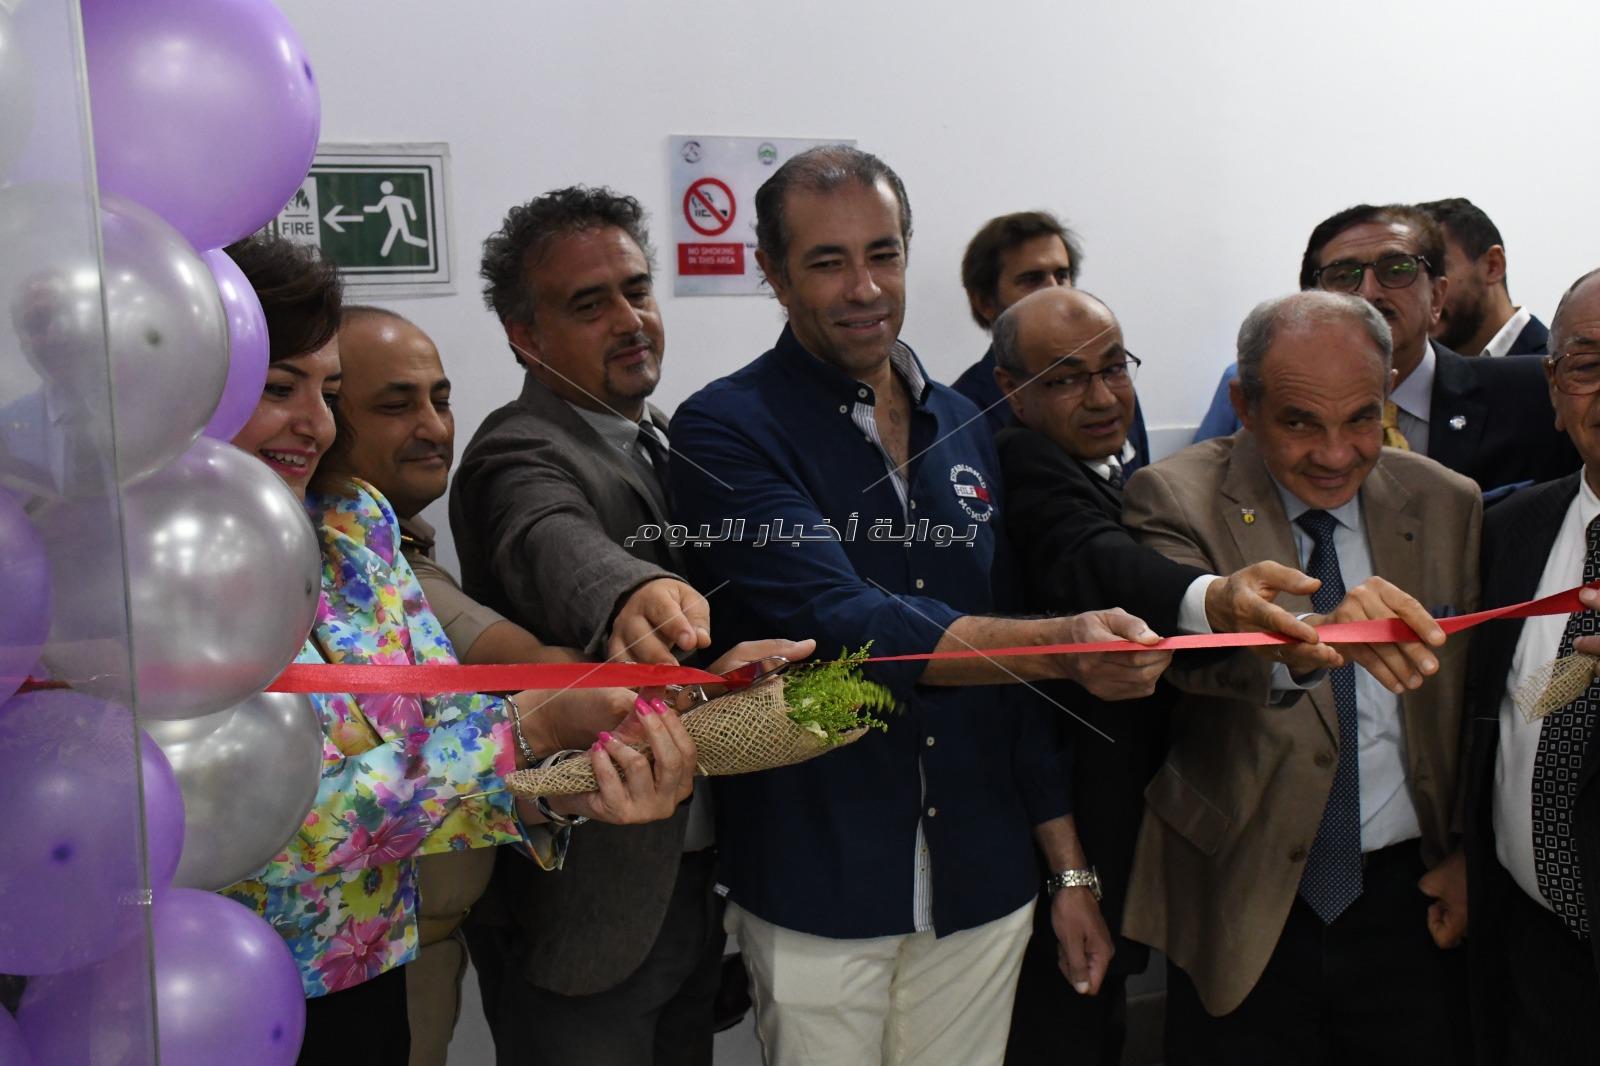 افتتاح أول معمل رقمي بجامعة مصر للعلوم والتكنولوجيا